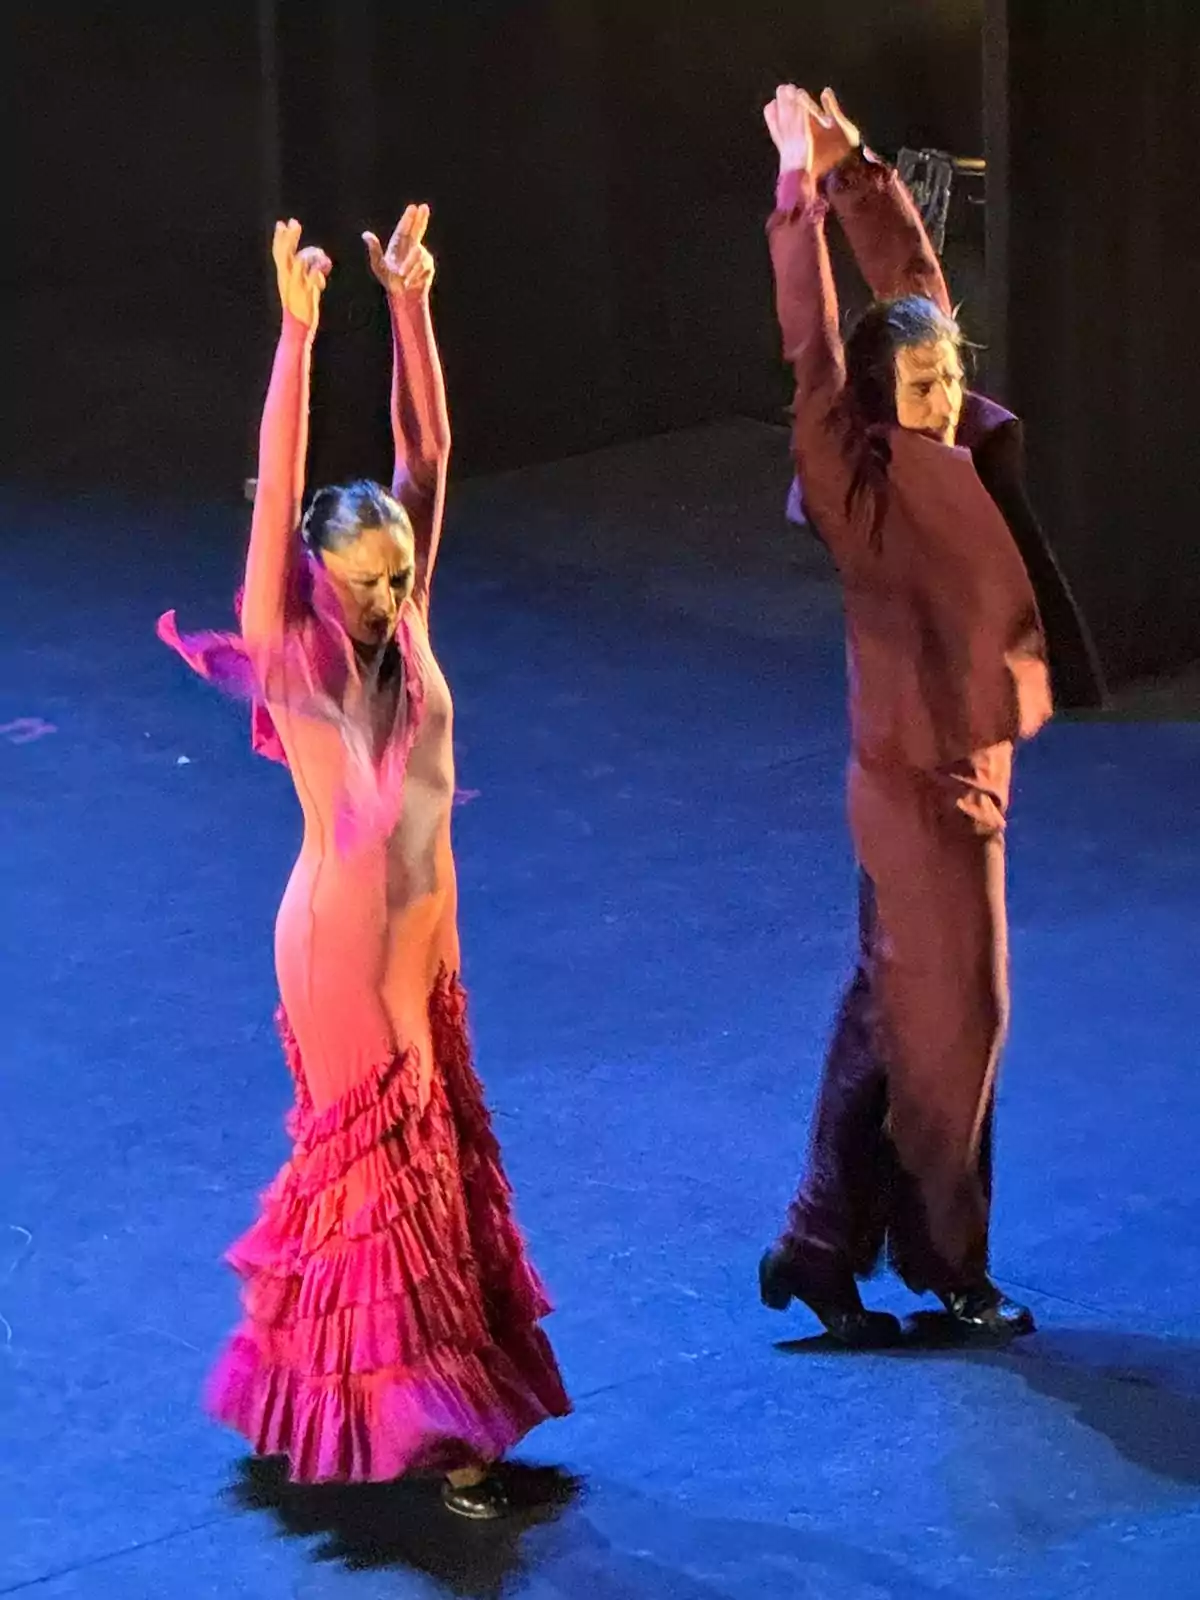 Dos bailarines de flamenco en el escenario con trajes tradicionales, uno en un vestido rojo y el otro en un traje marrón, levantando los brazos mientras realizan una actuación.